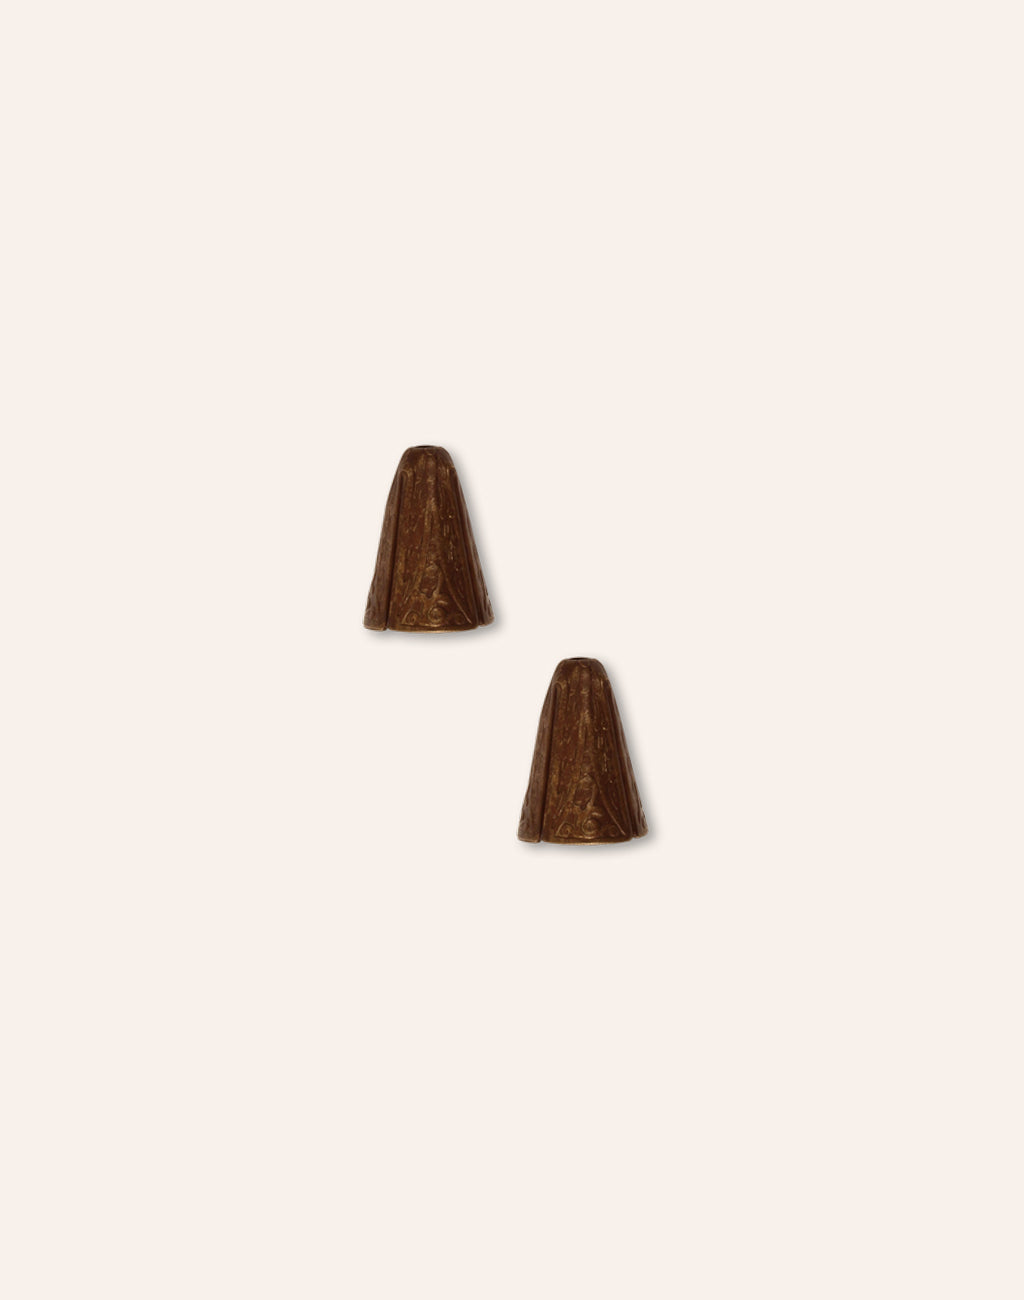 Ornate Cone, 14x10mm, (2pcs)